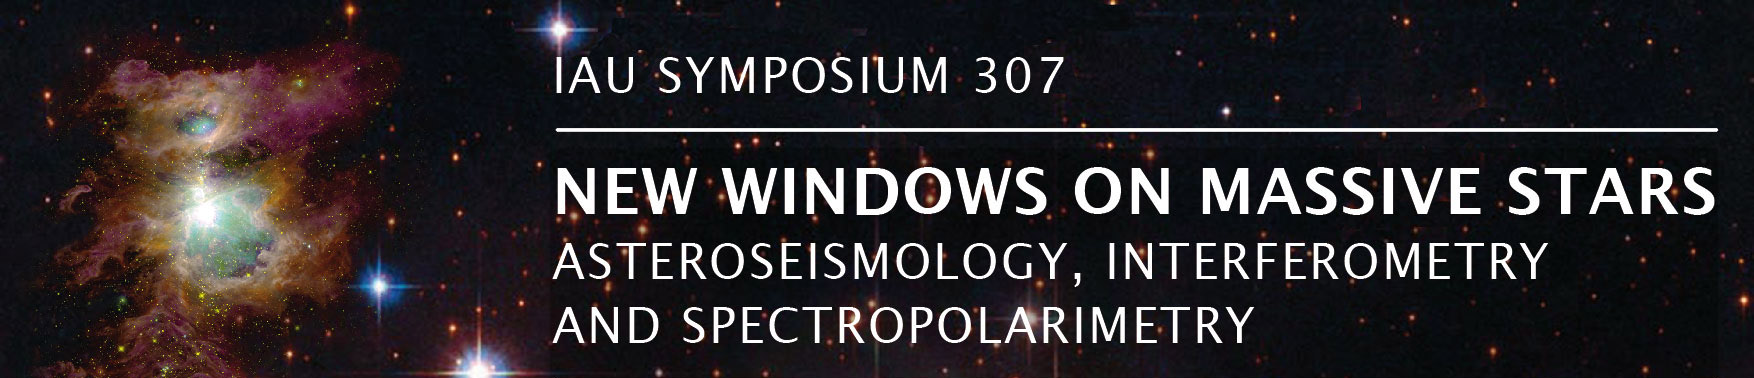 IAU Symposium 307: New windows on massive stars